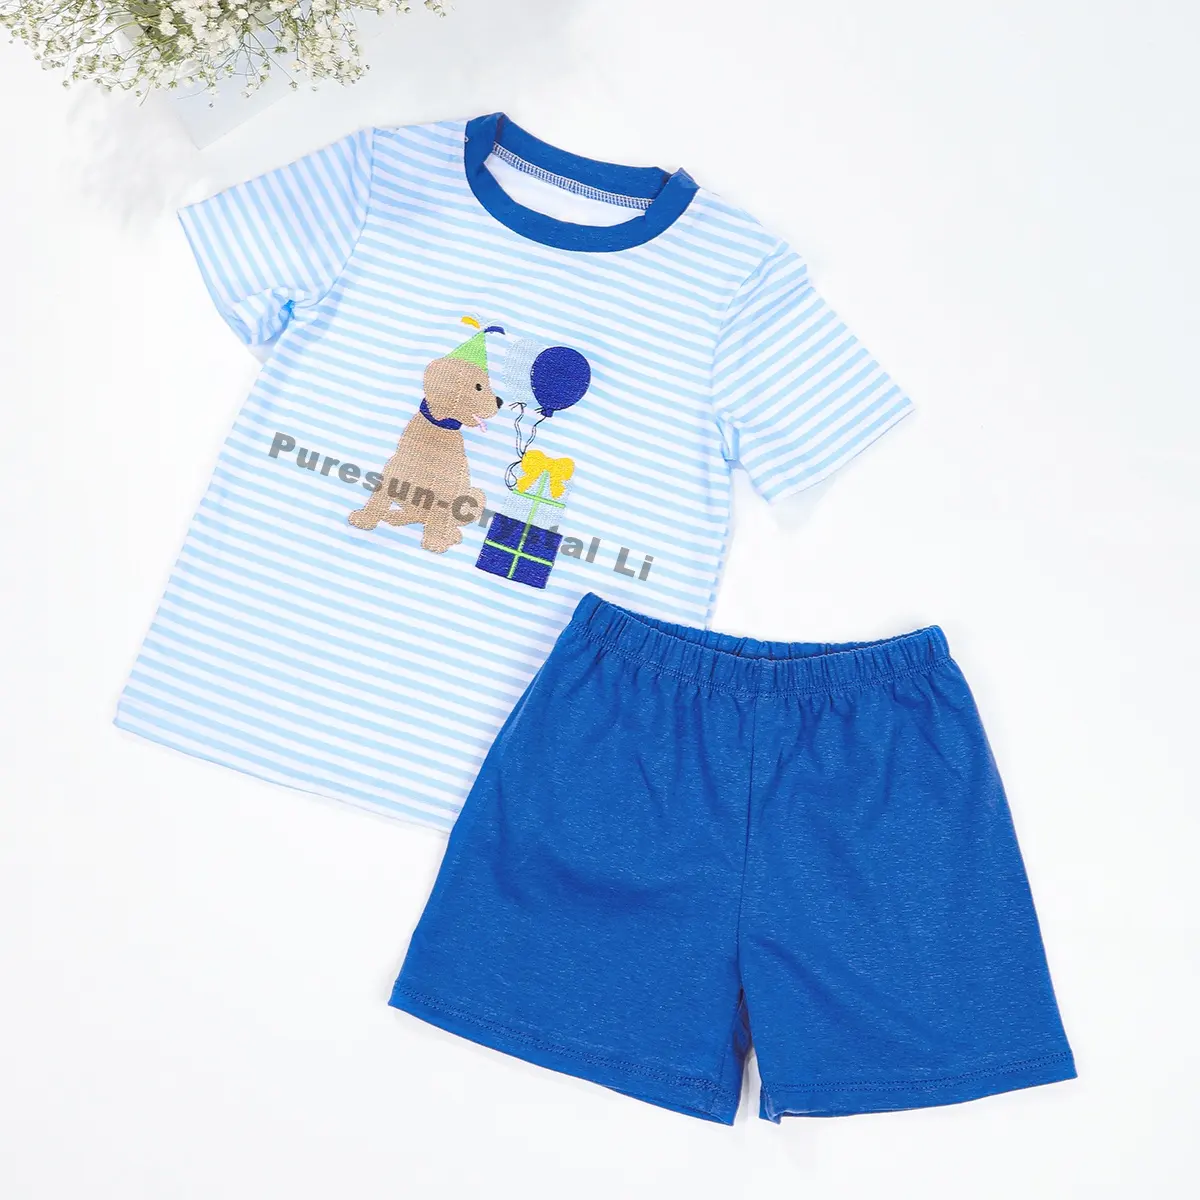 Toptan erkek çocuklar için yavru nakış ile giyim setleri yaz doğum günü kıyafetleri